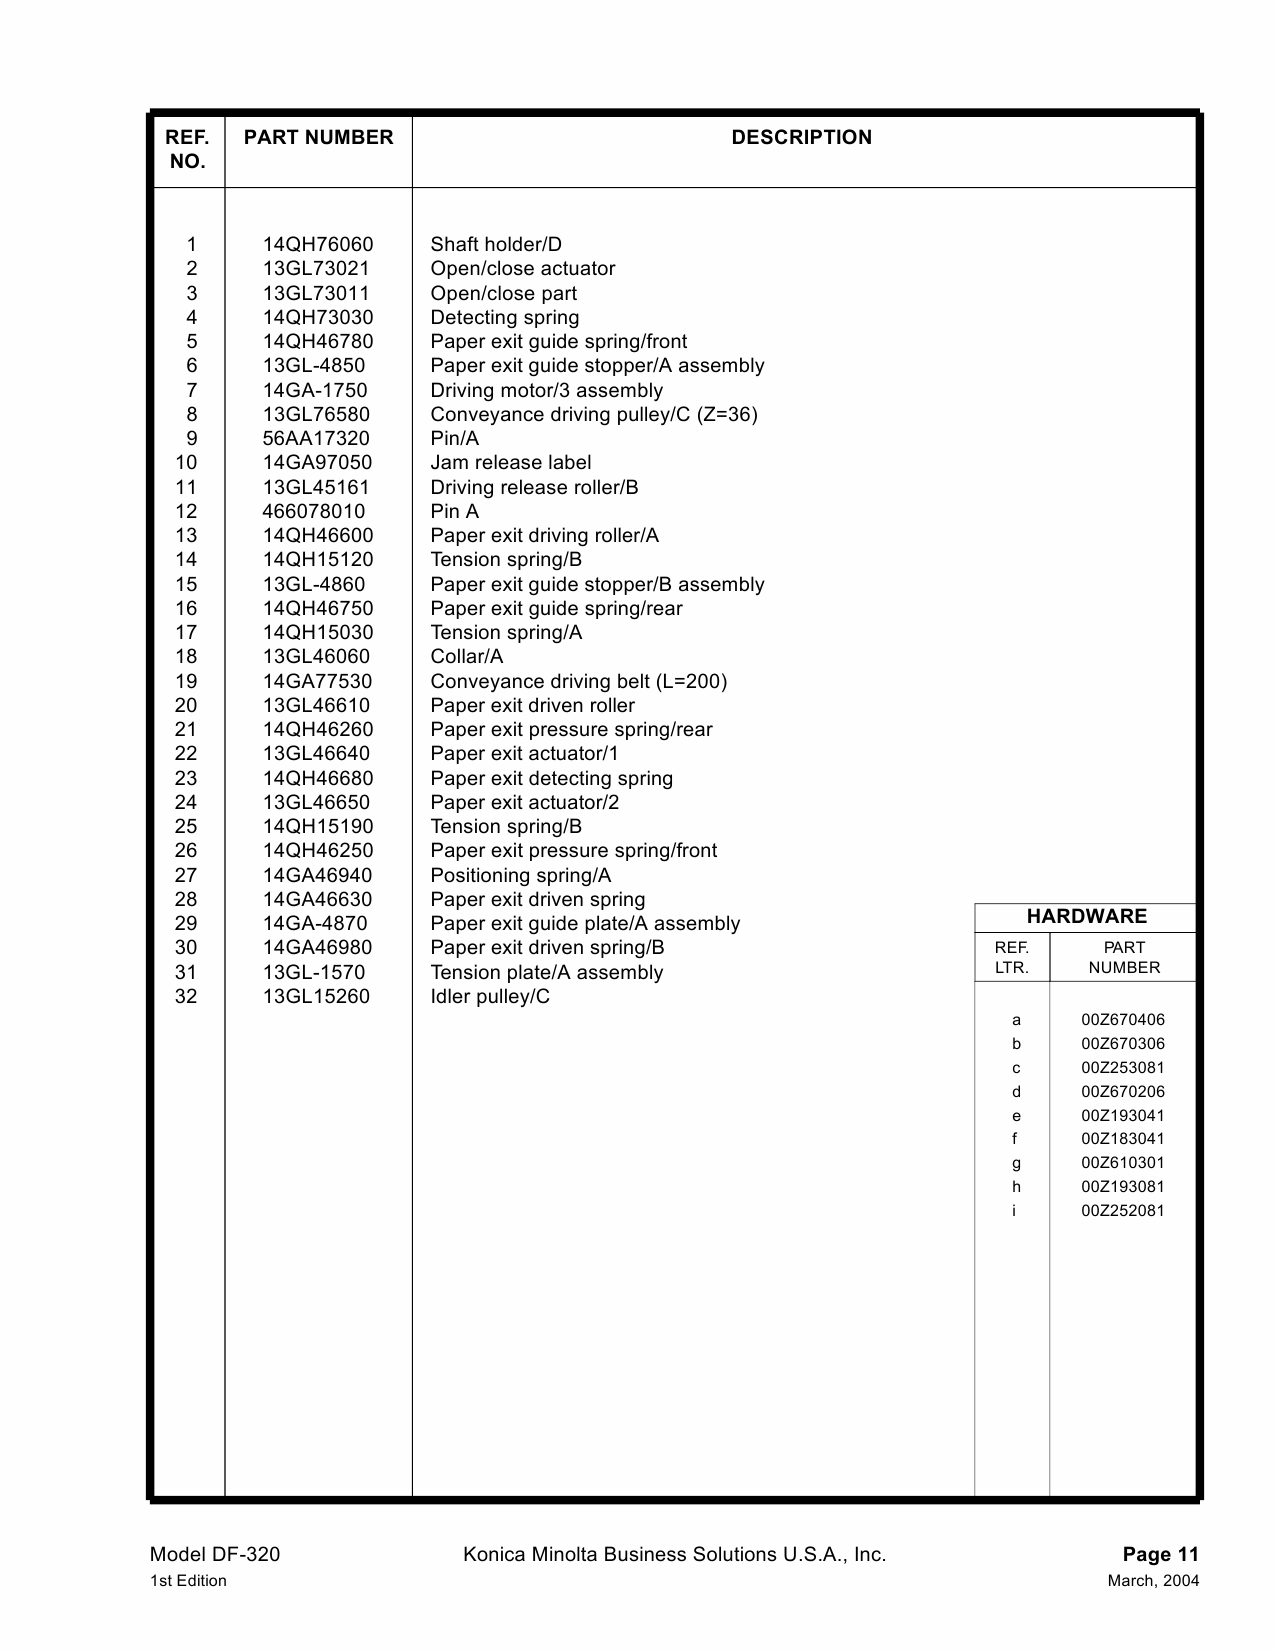 Konica-Minolta Options DF-320 Parts Manual-2